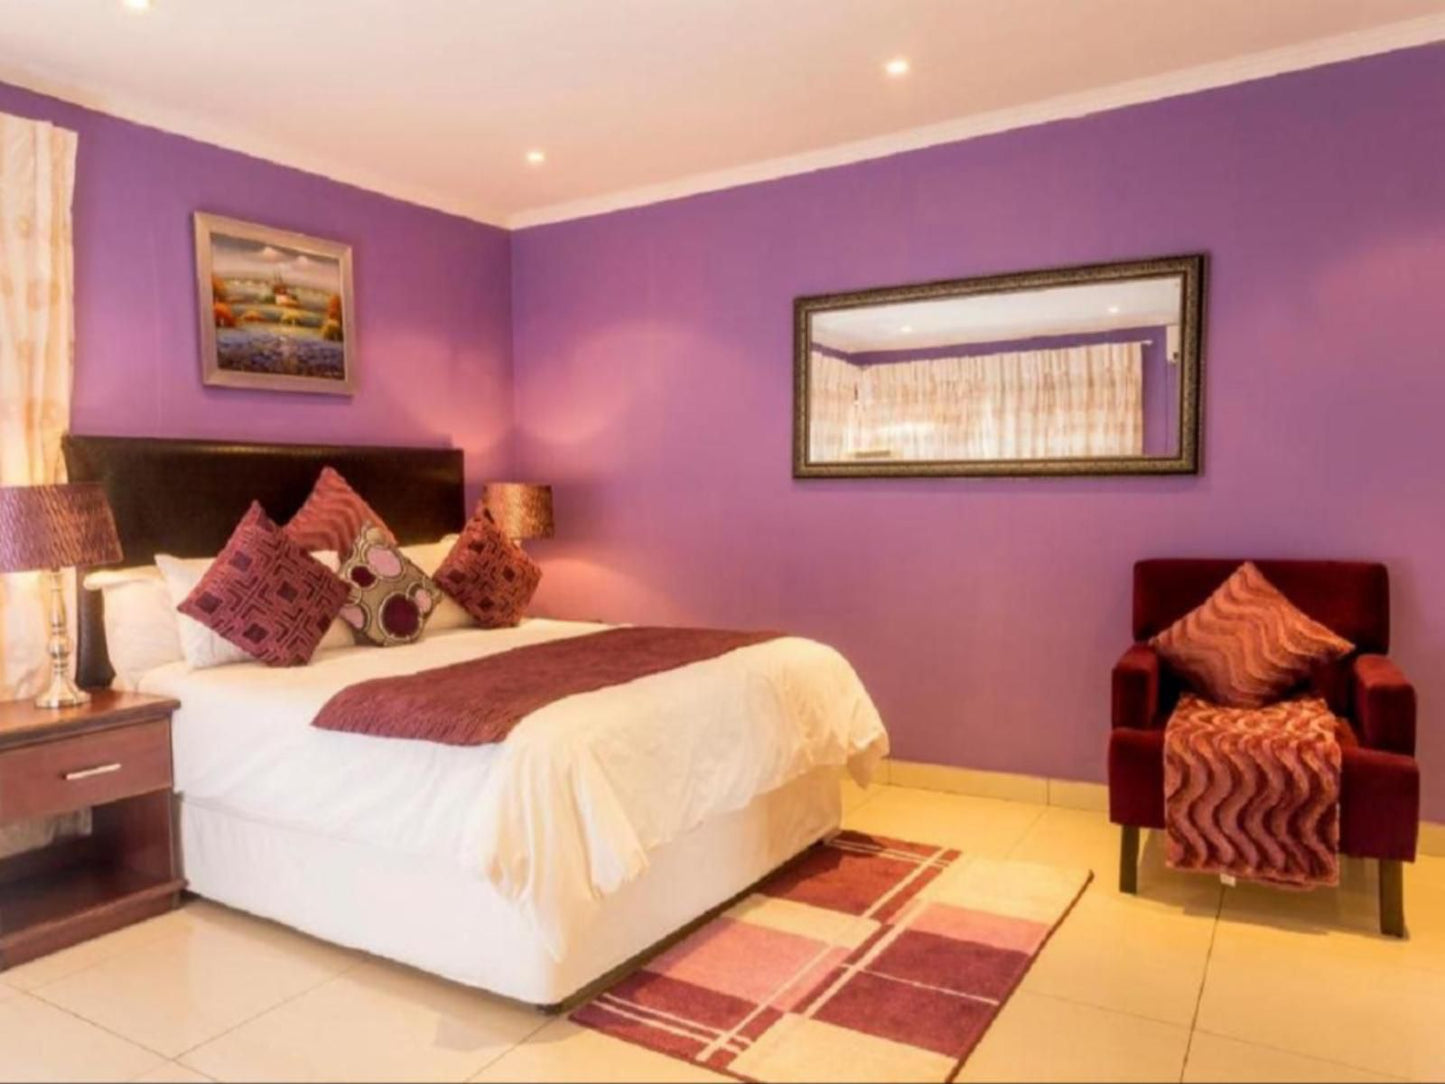 Ezulwini Guest House Ballito Kwazulu Natal South Africa Bedroom